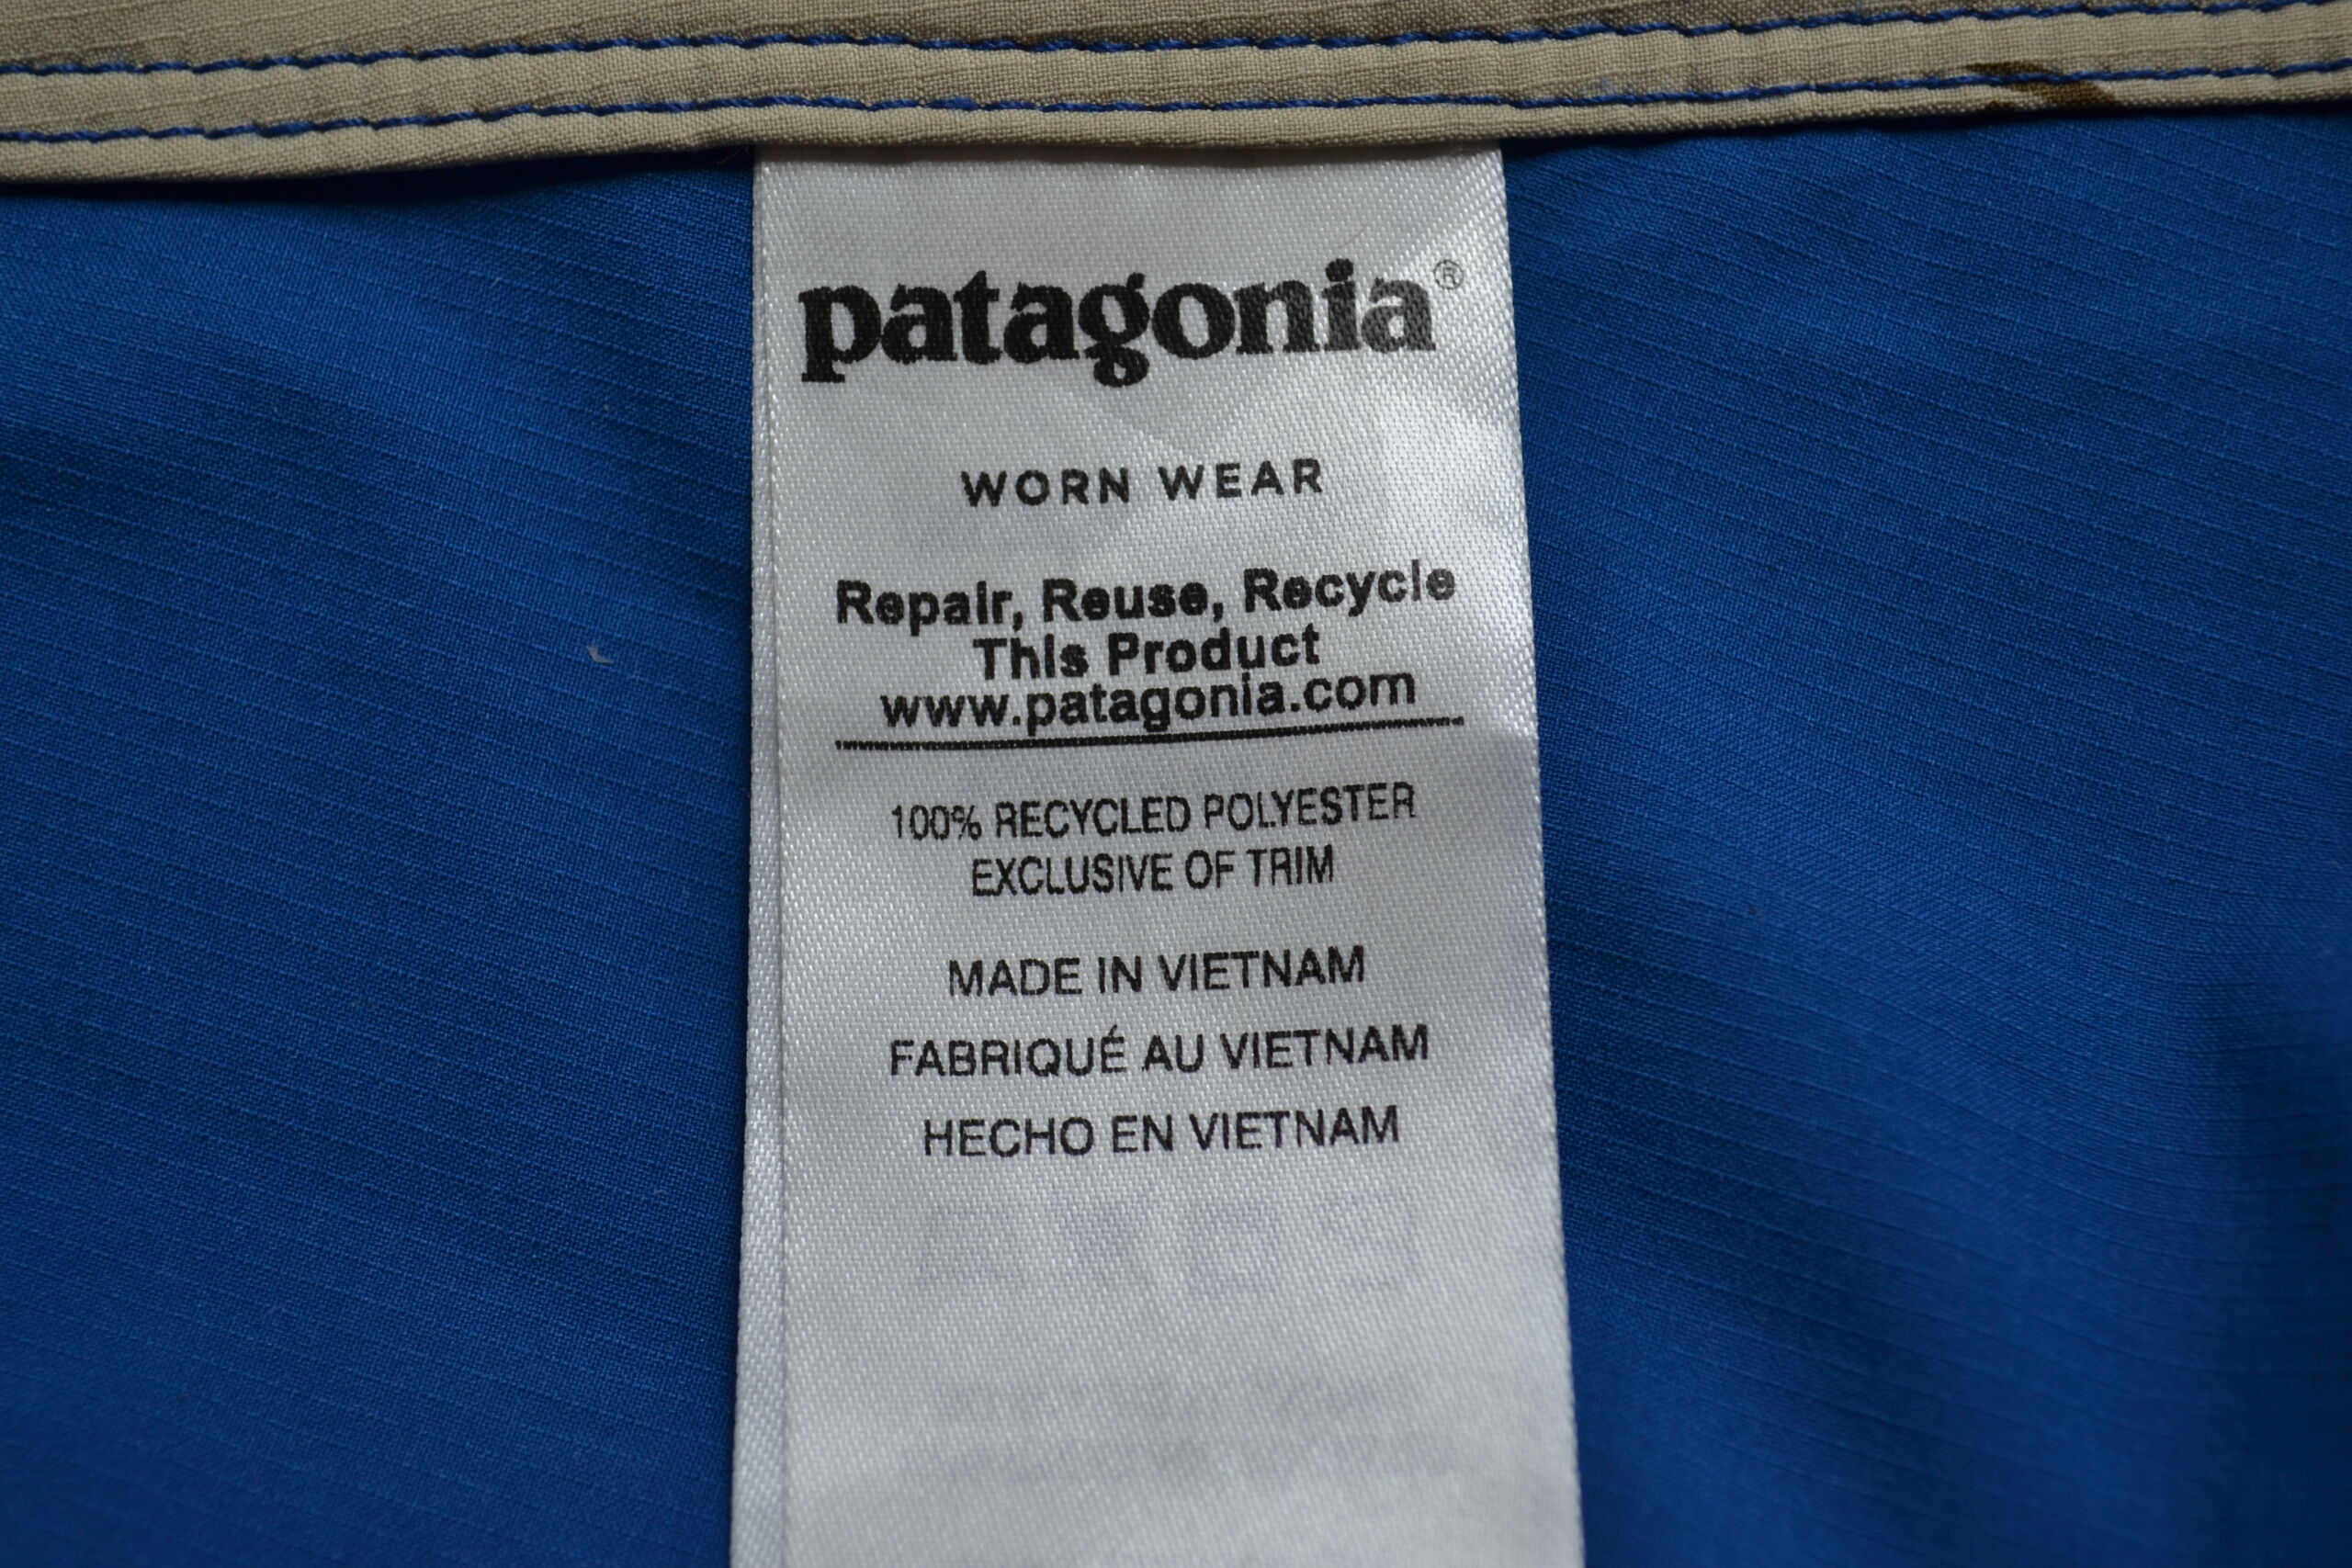 Patagonia tag